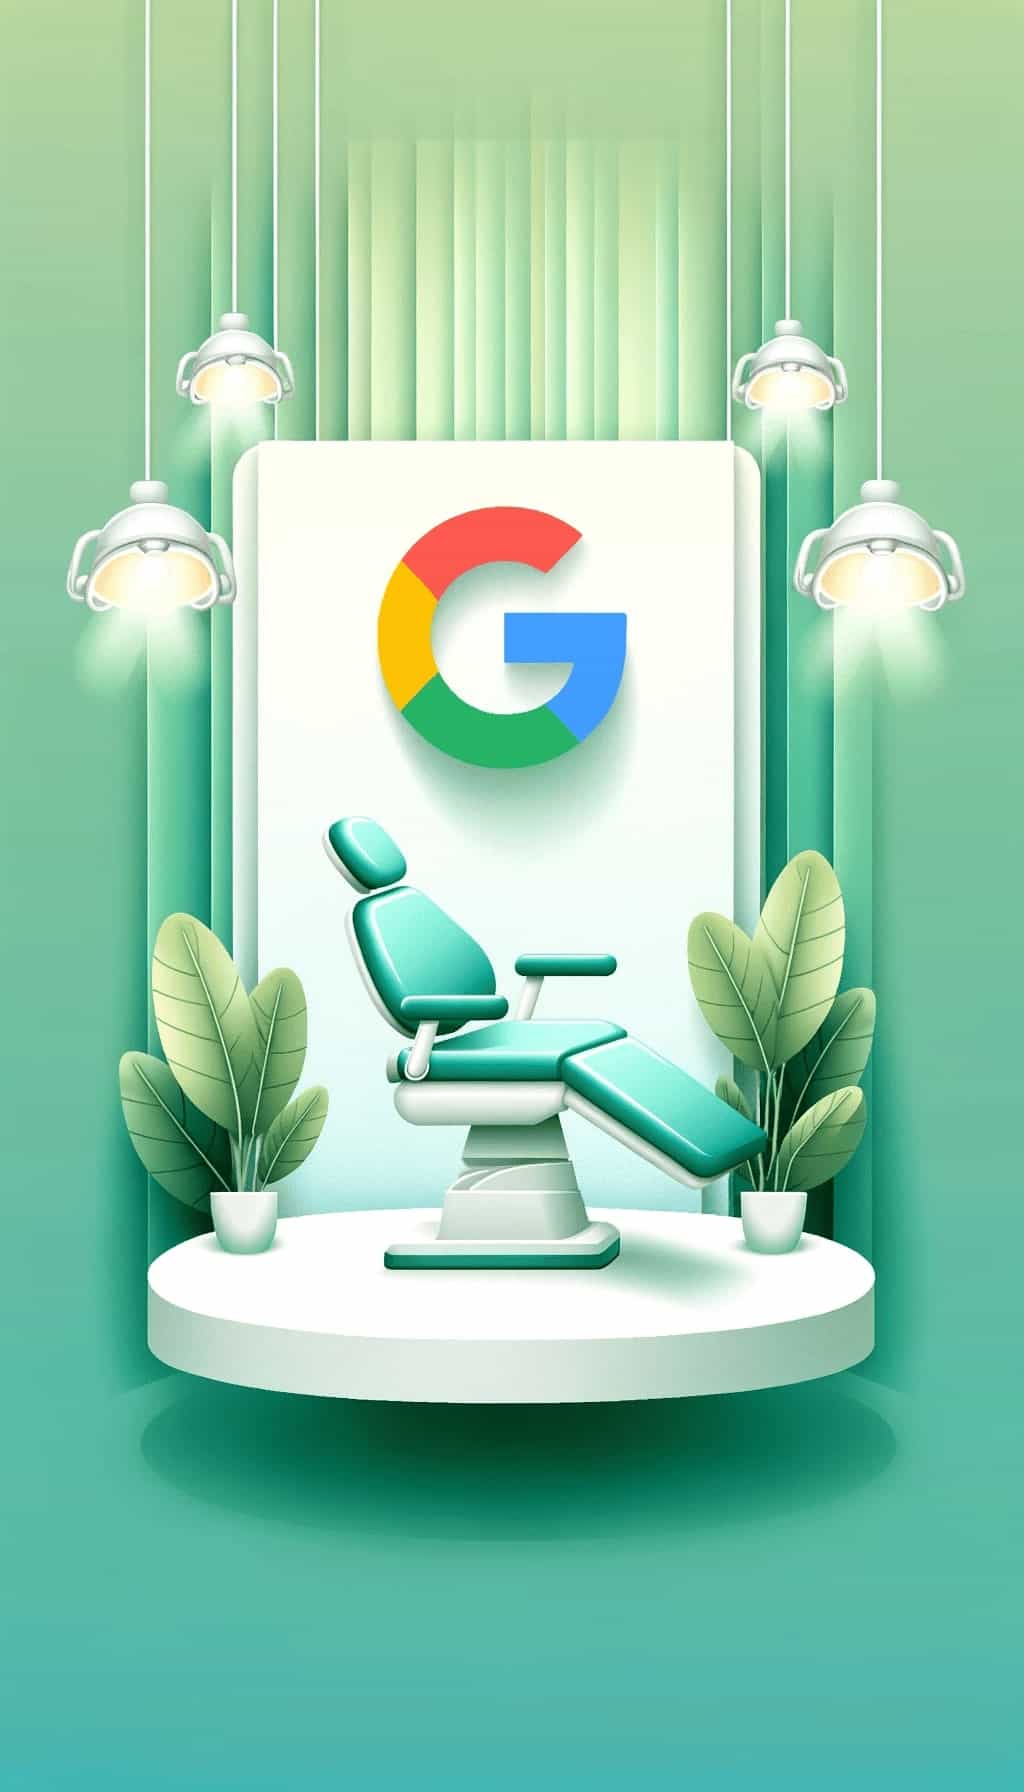 Clinica Dental Urbina en Google